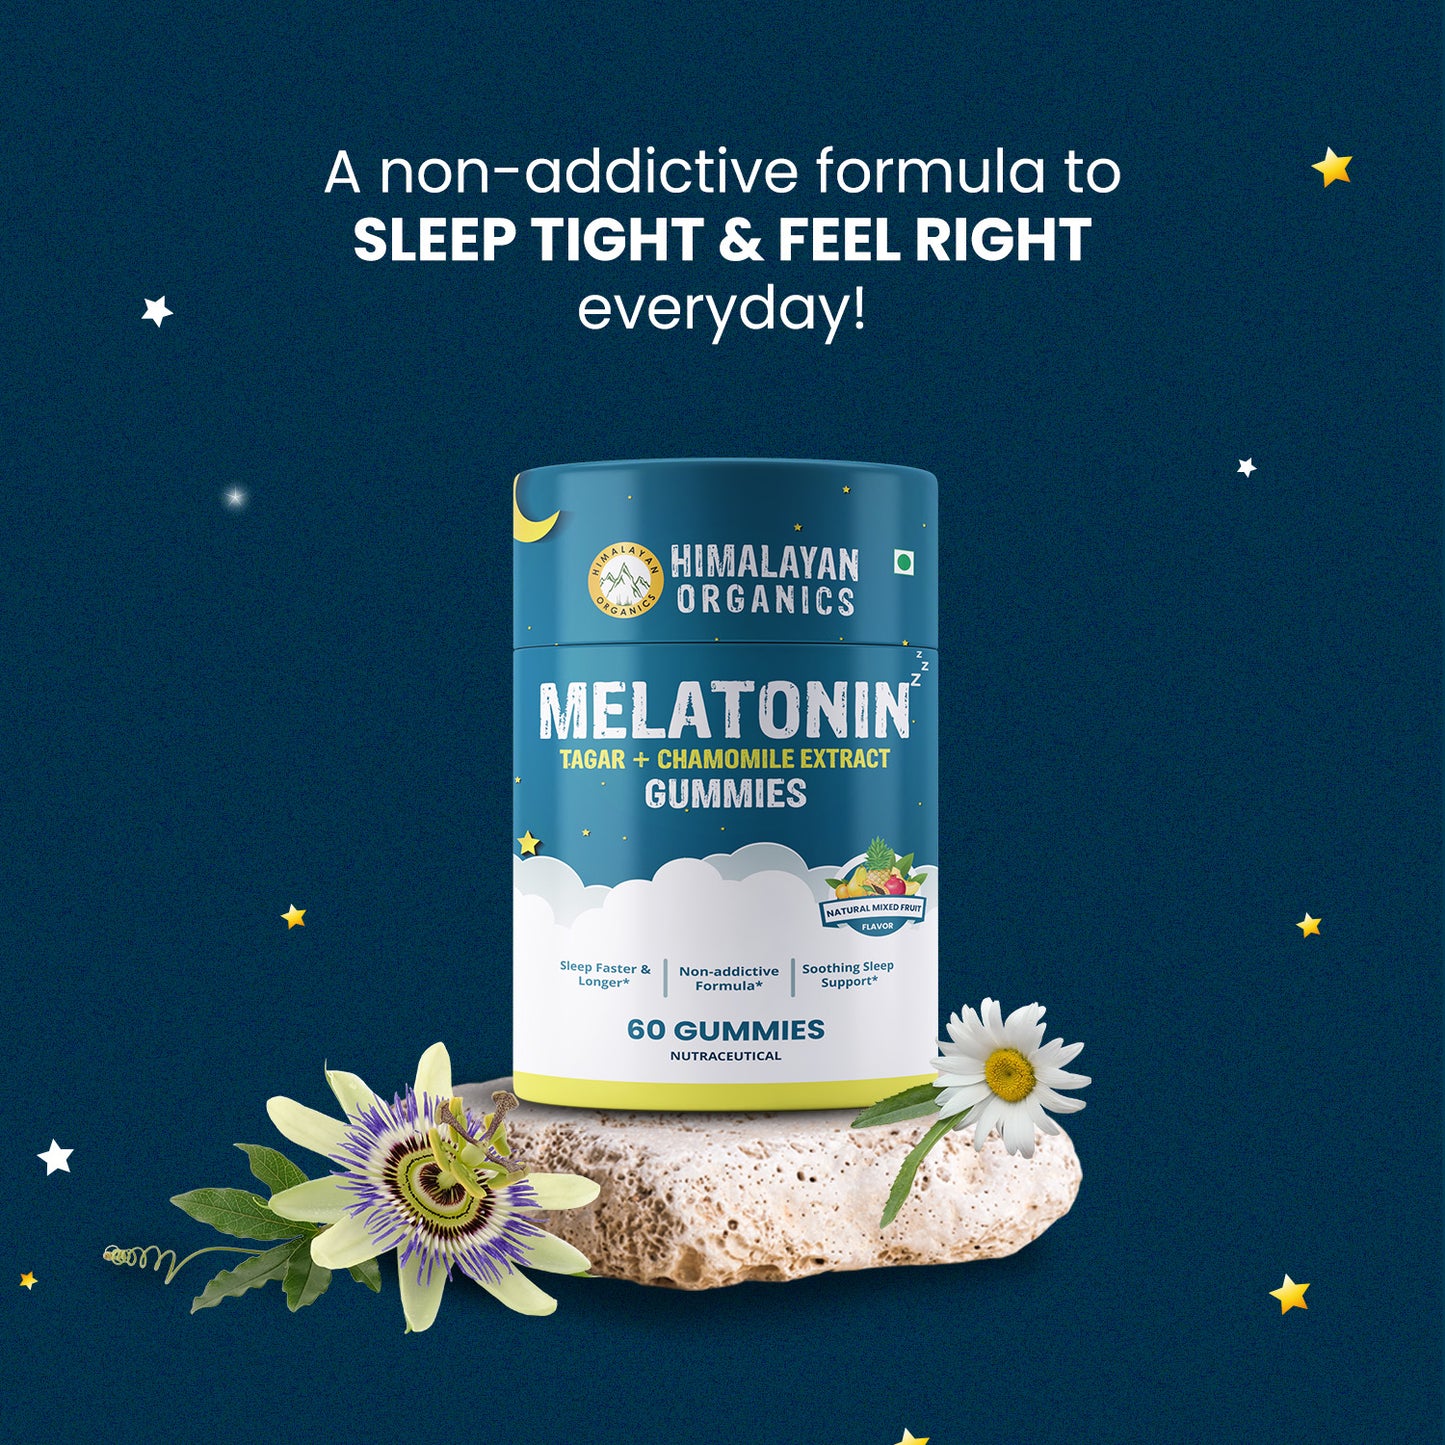 Himalayan Organics Melatonin Tagar + Chamomile Extract Gummies | Sleep Faster & Longer | Non-addictive Formula | Soothing Sleep Support (60 Gummies)